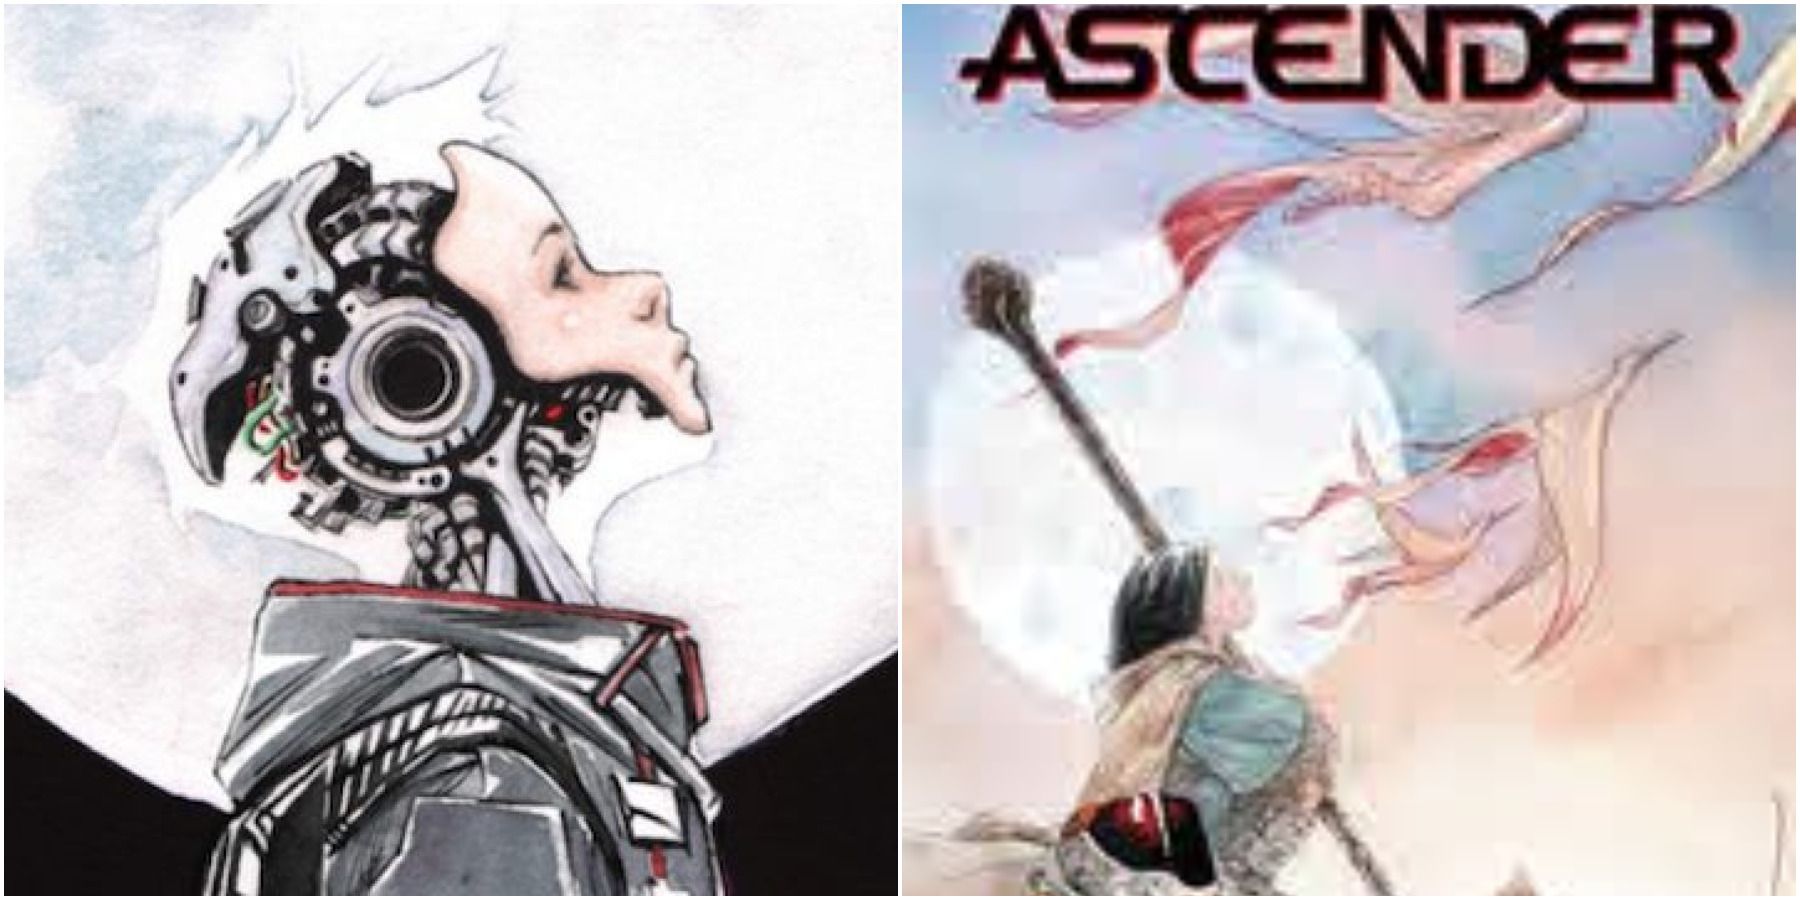 A split image of Descender and Ascender from Image Comics